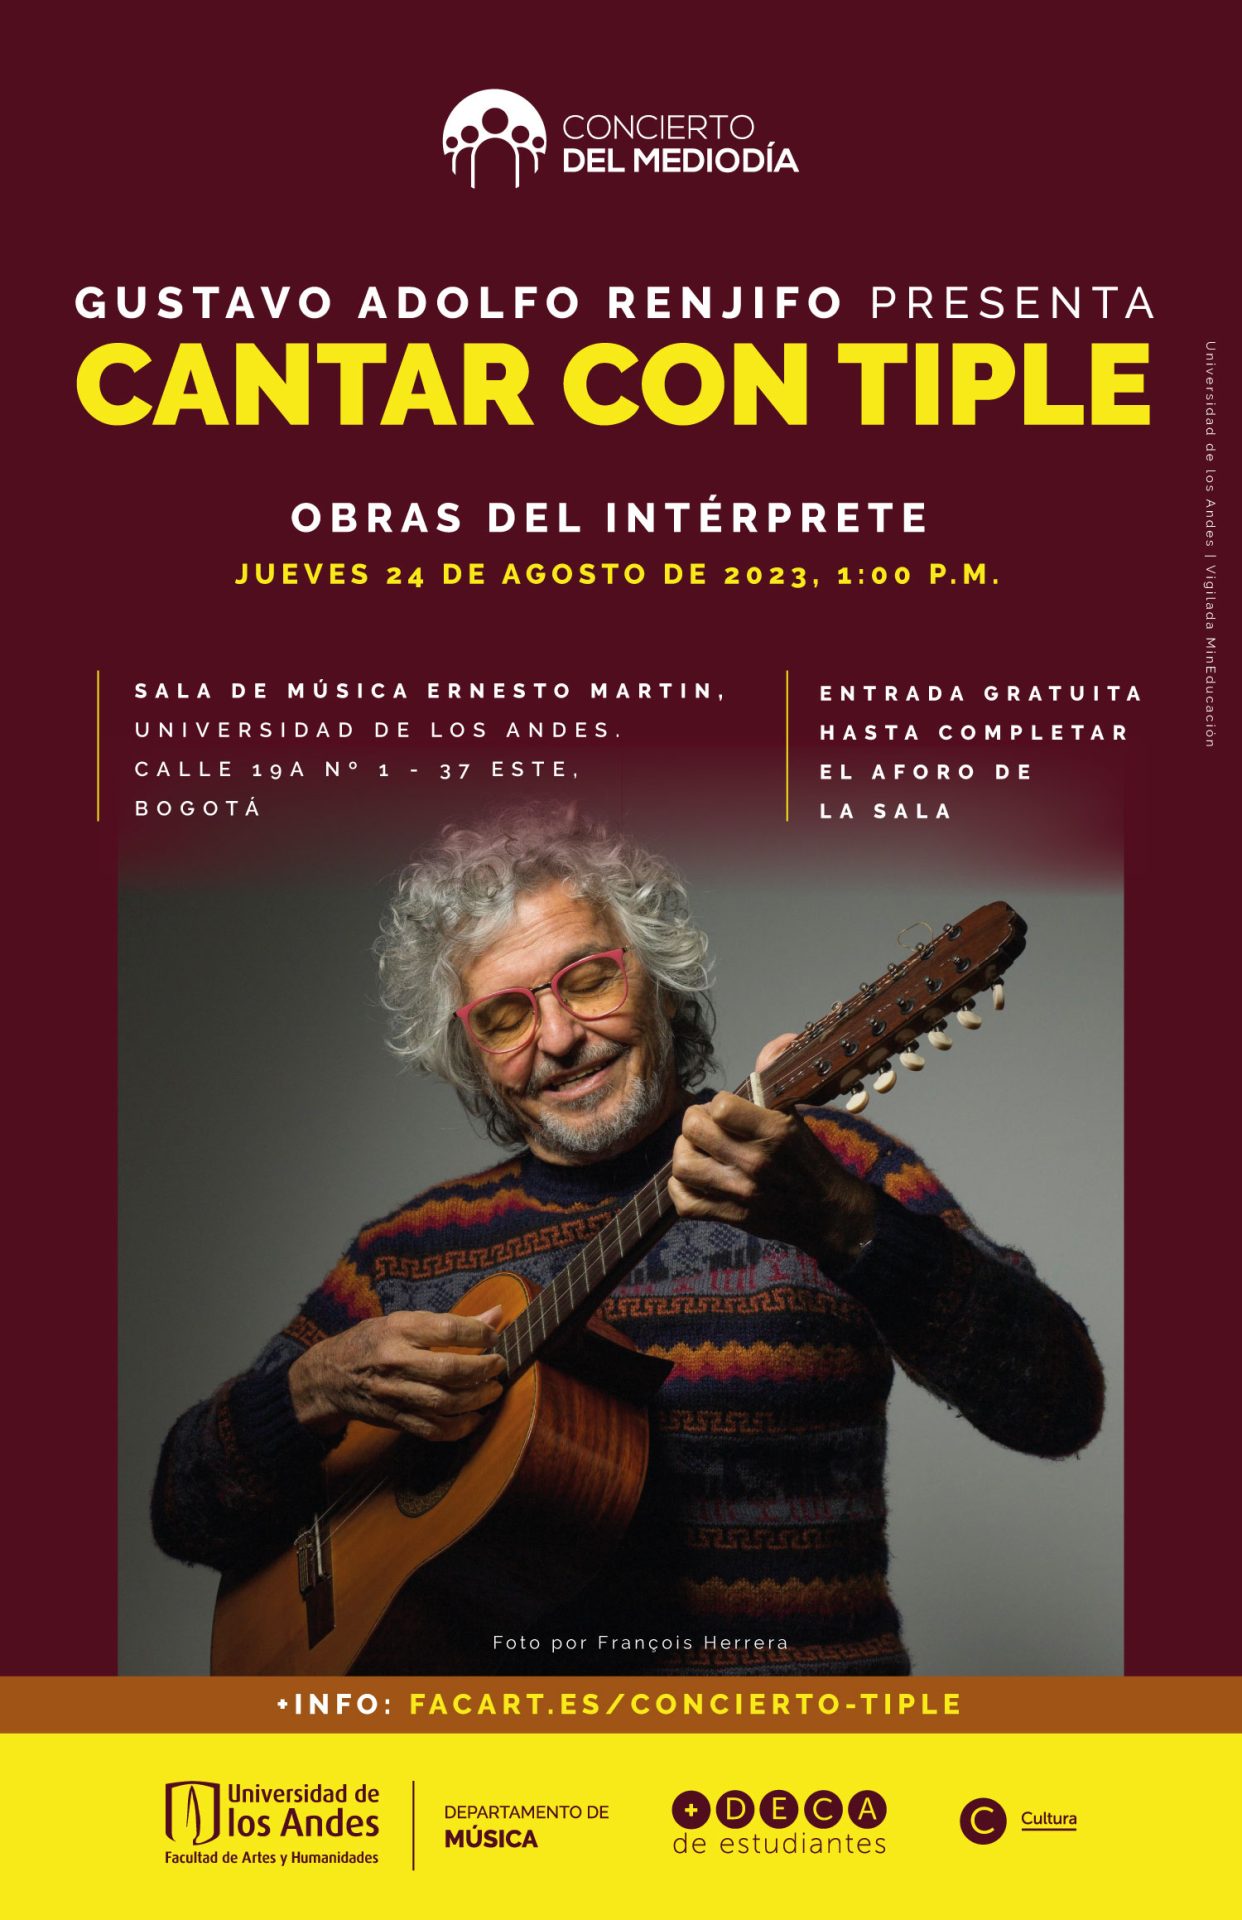 Jueves 24 de agosto de 2023 a la 1:00 p.m. en la sala de música Ernesto Martin, Universidad de los Andes